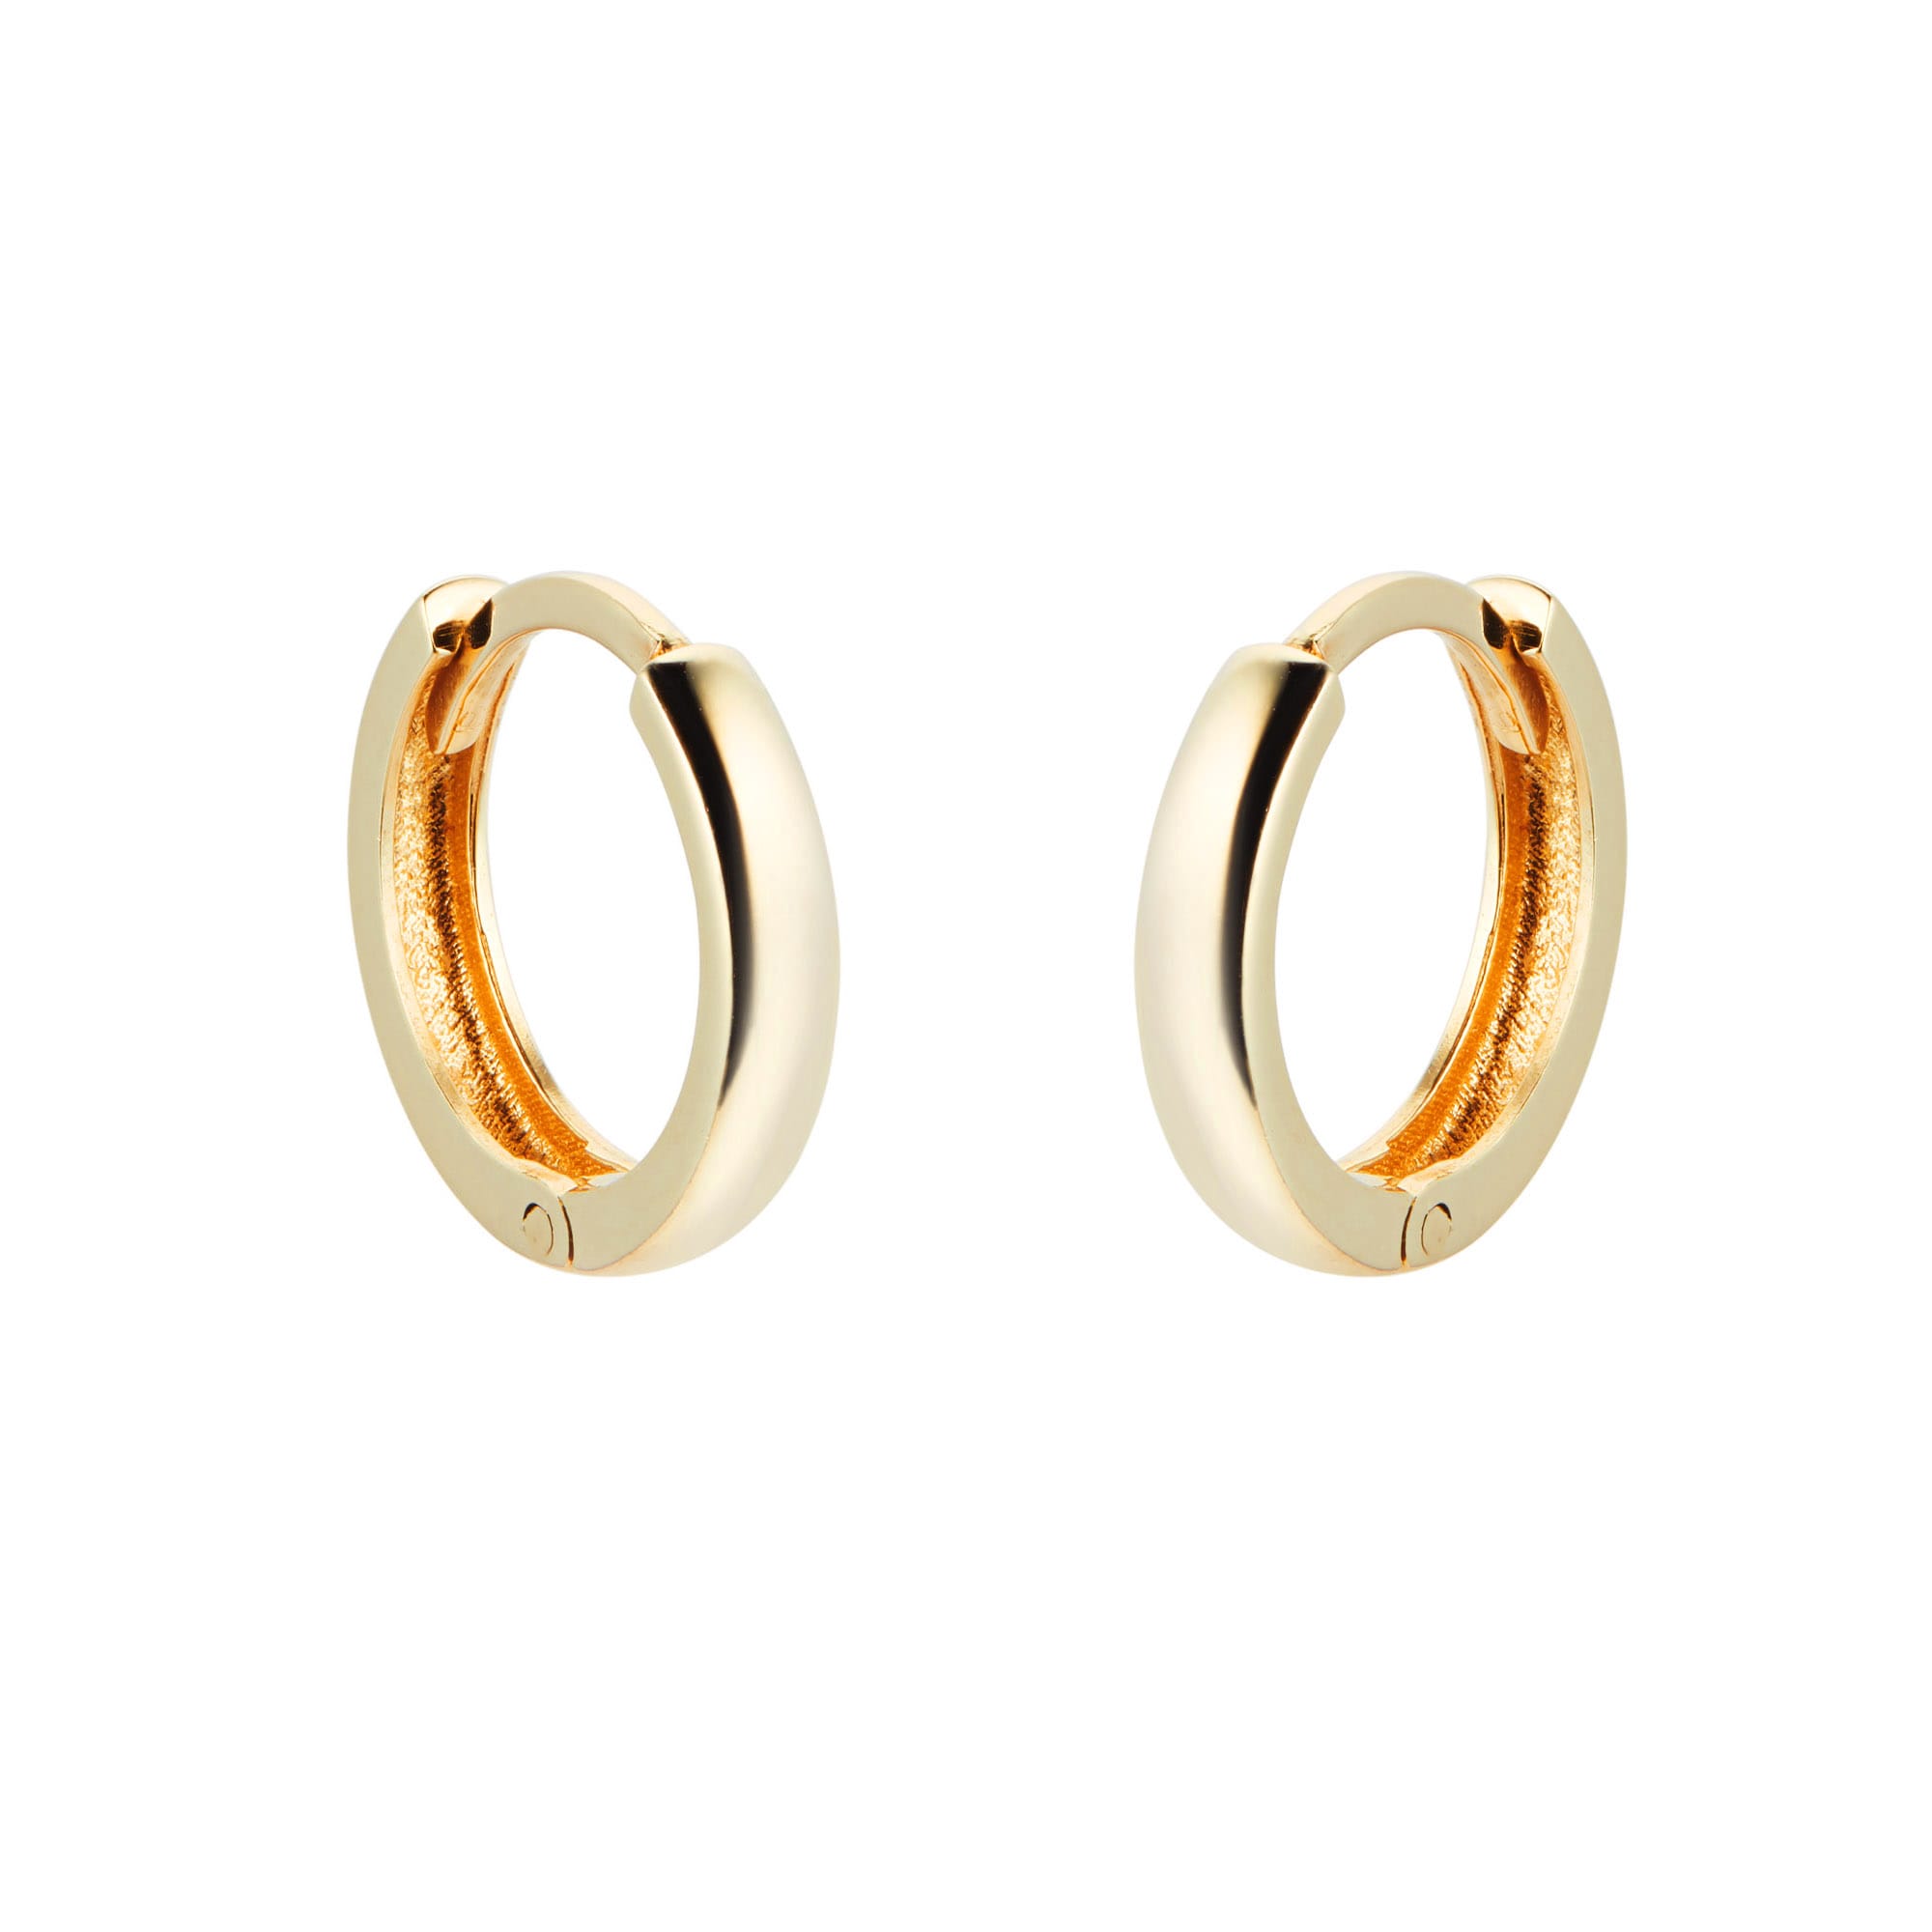 Icarus Small Hoop Earrings in Gold Vermeil by UK designer Cara Tonkin